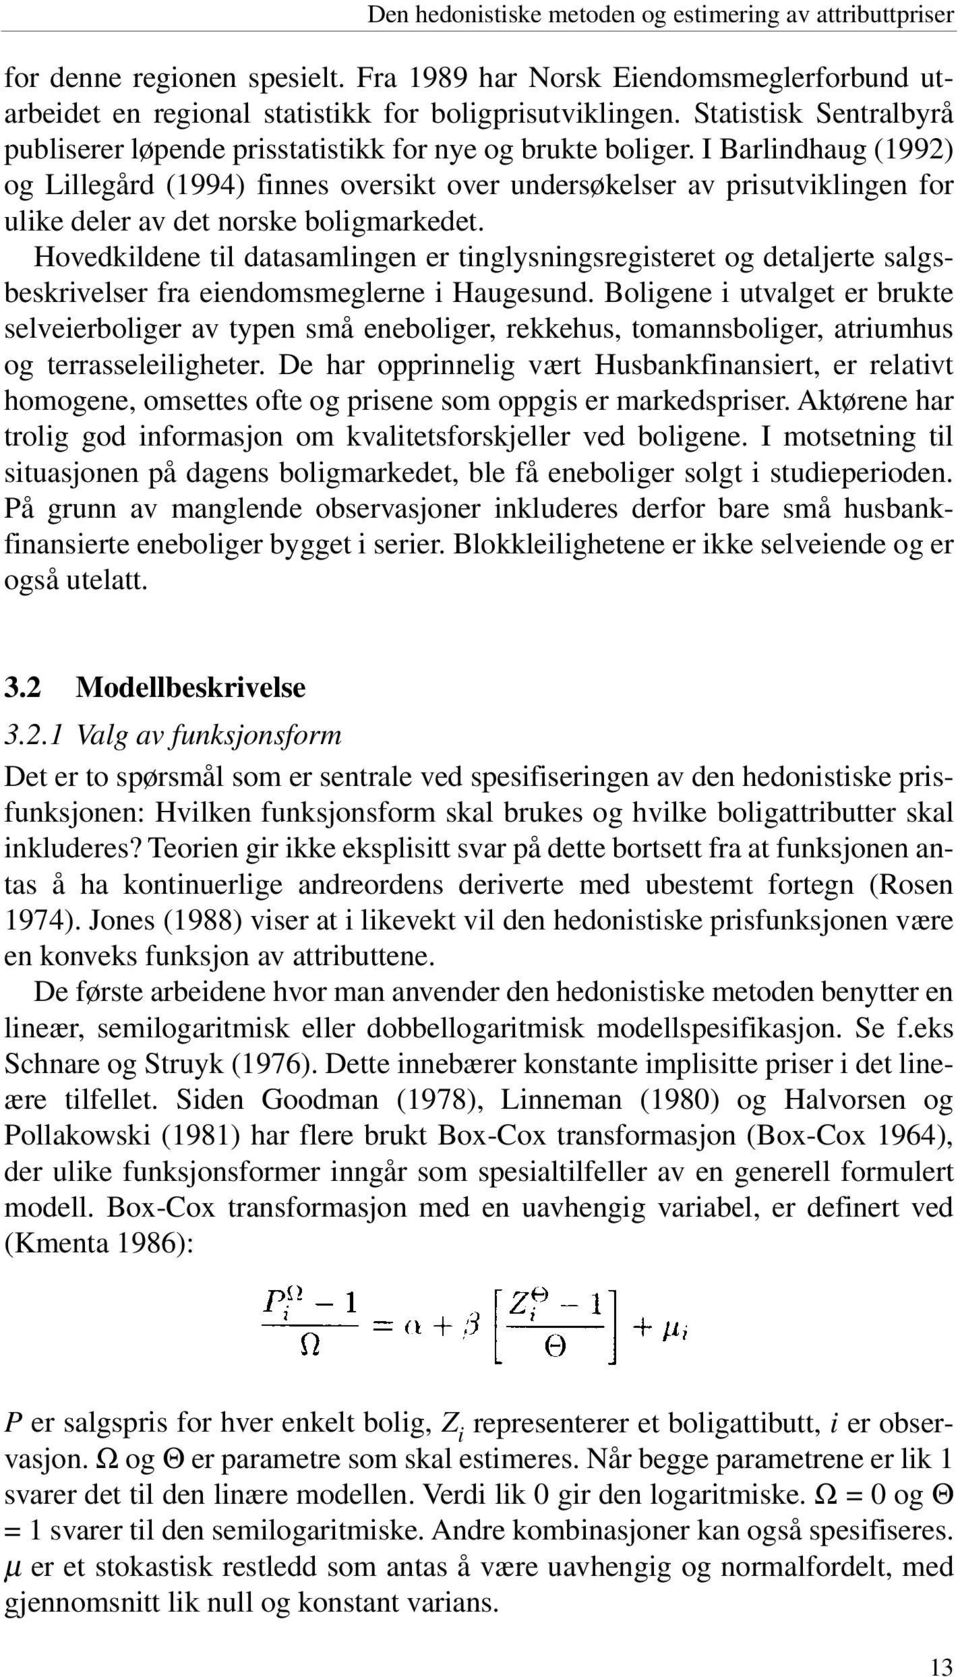 I Barlindhaug (1992) og Lillegård (1994) finnes oversikt over undersøkelser av prisutviklingen for ulike deler av det norske boligmarkedet.